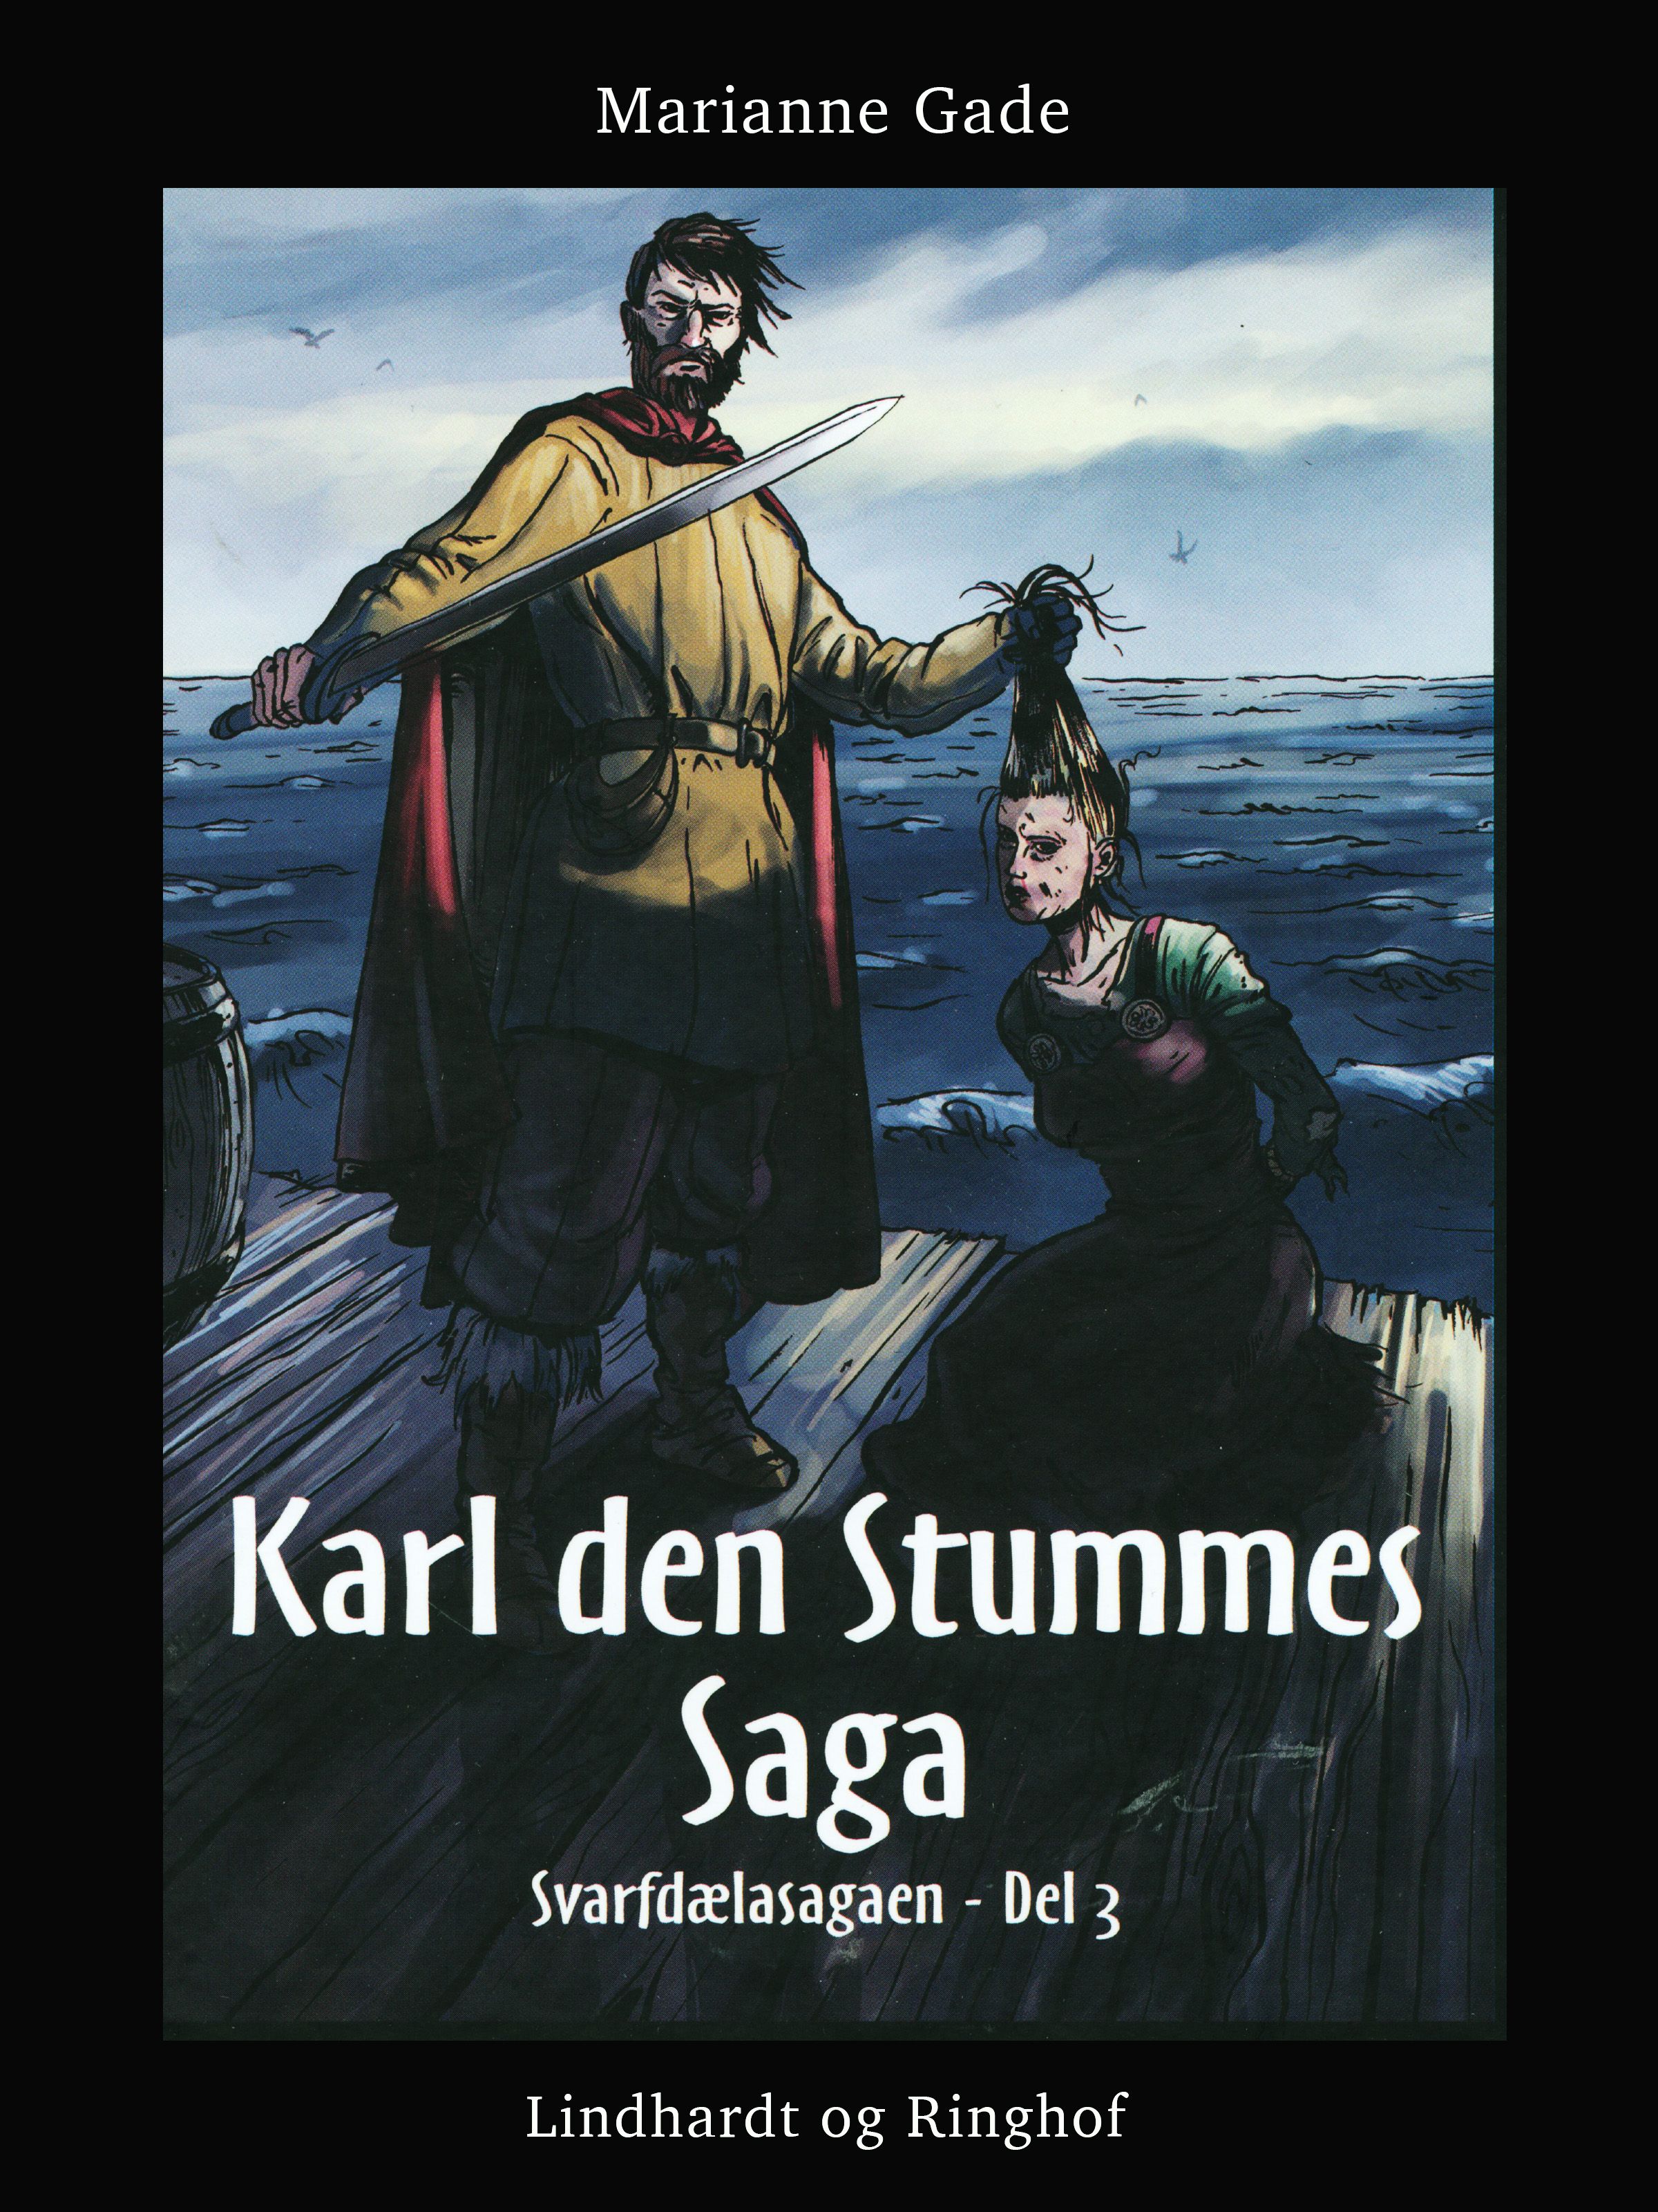 Karl den Stummes saga, e-bog af Marianne Gade